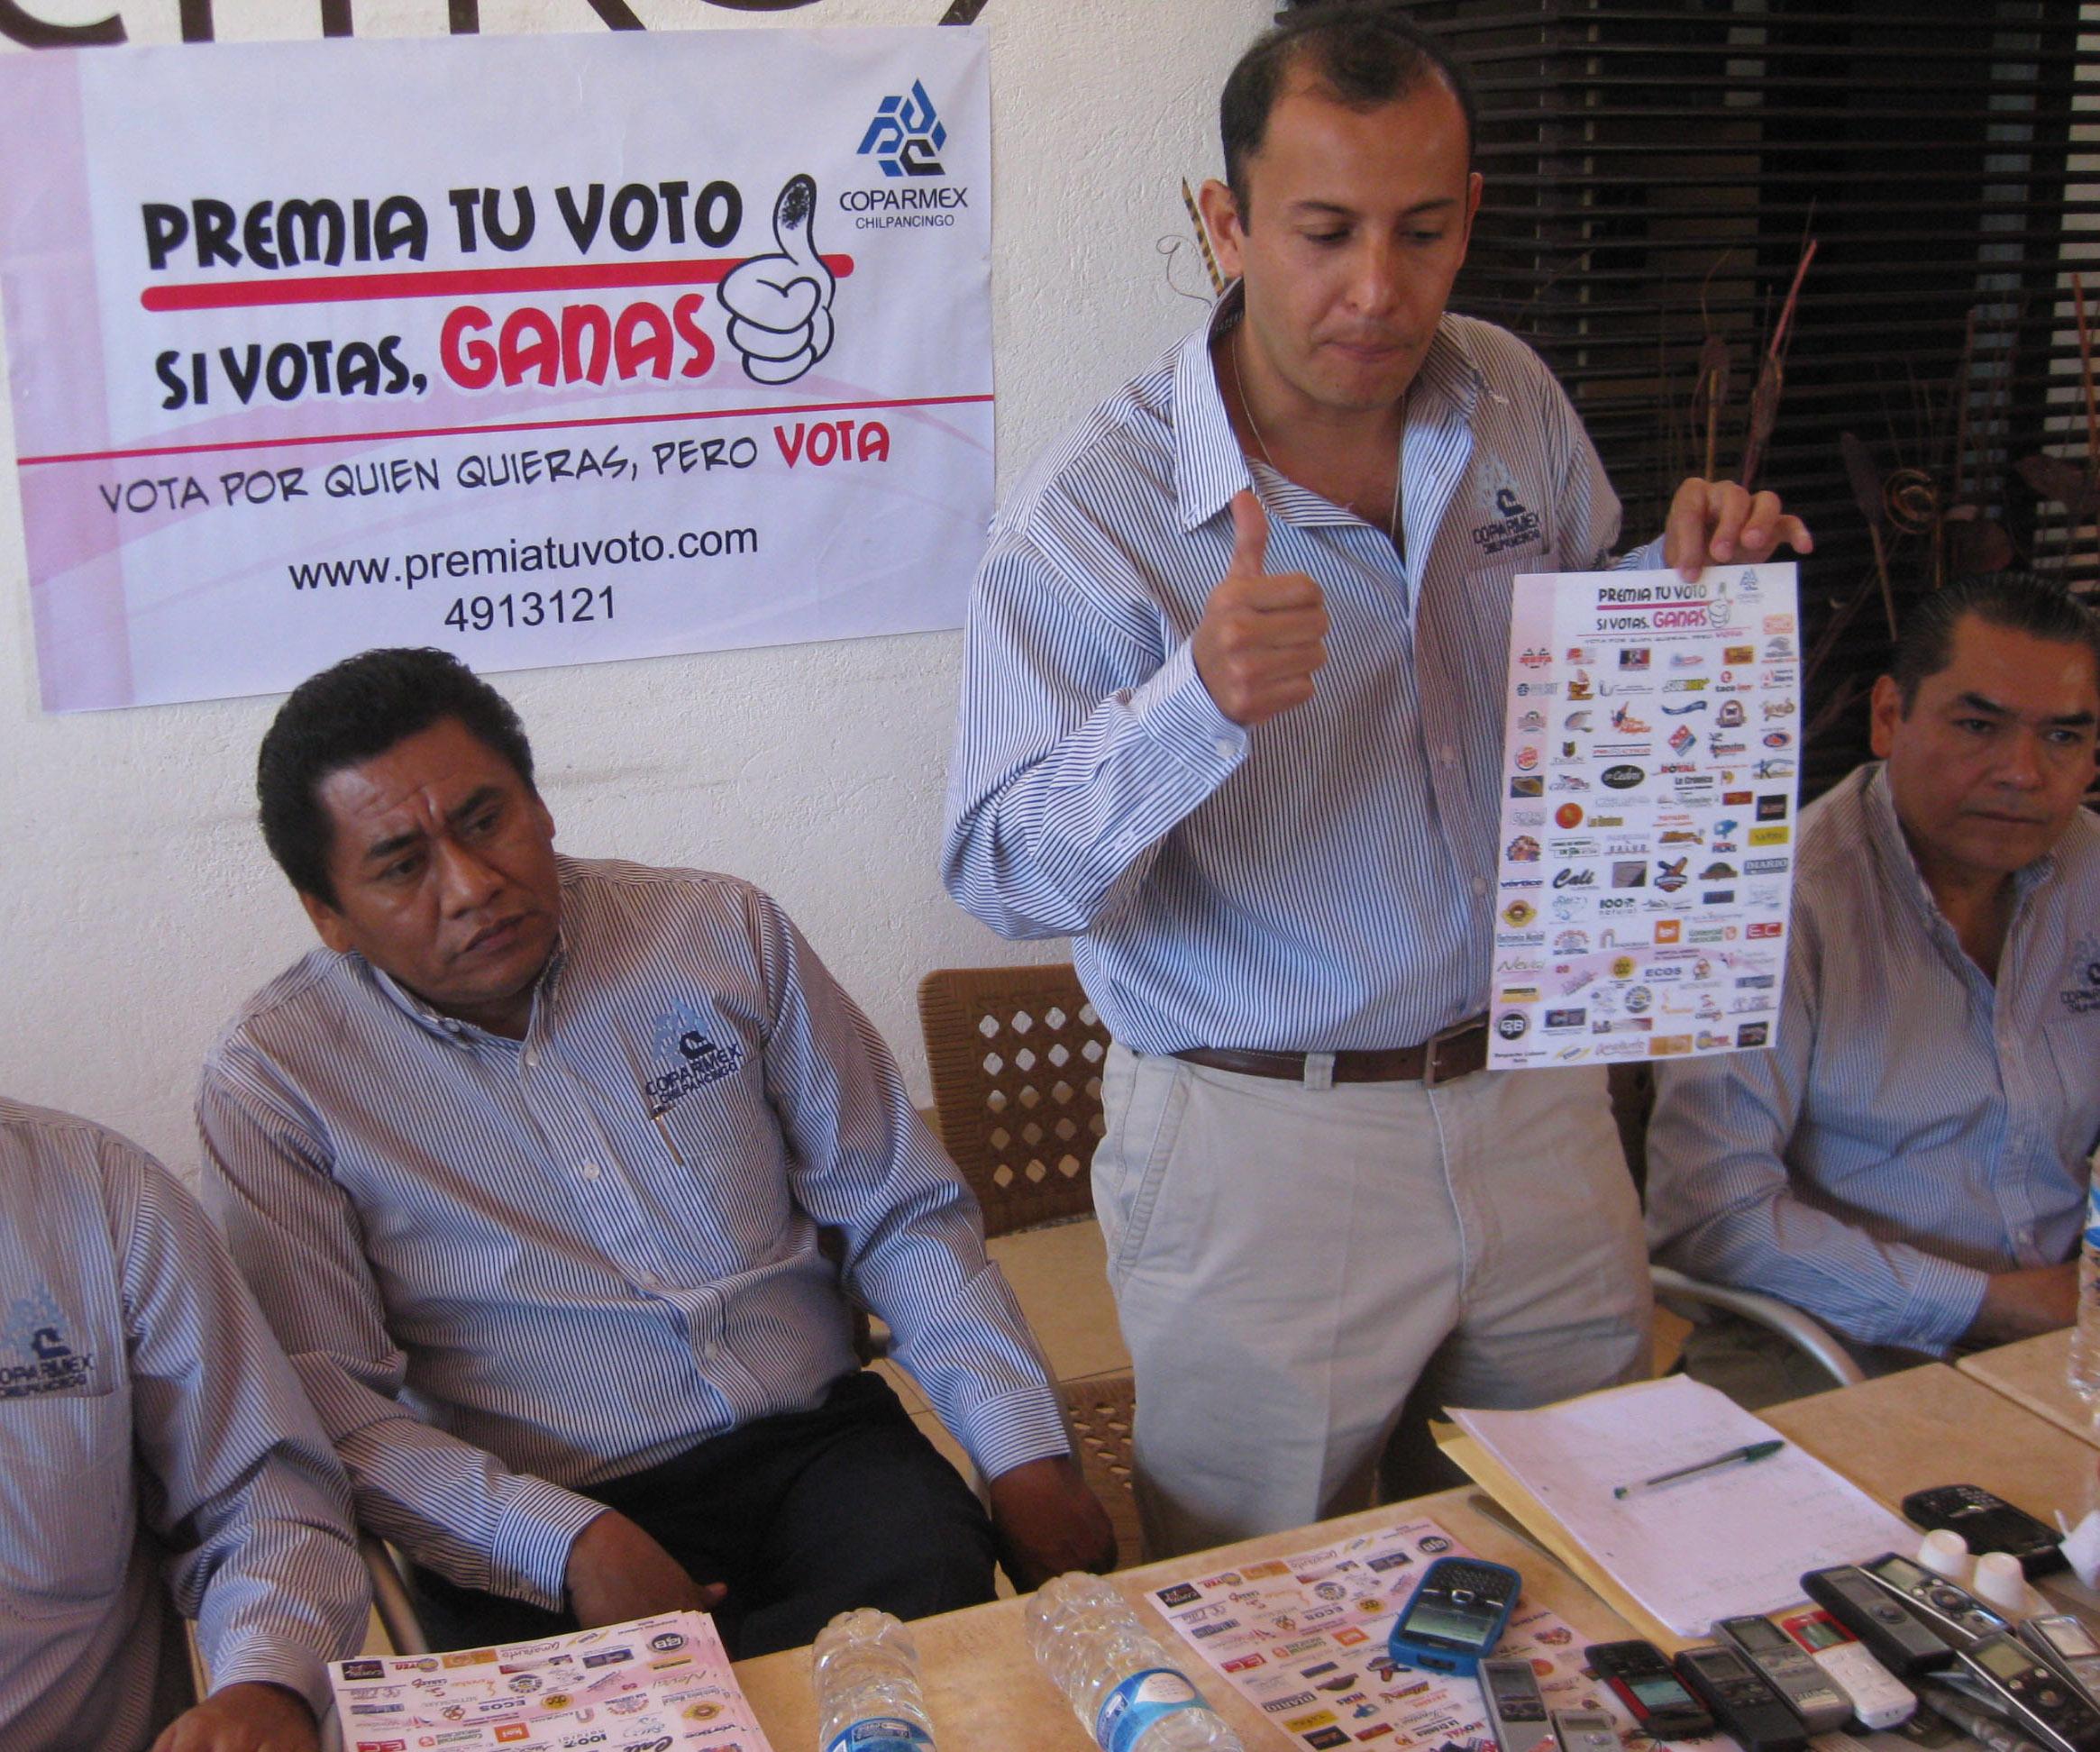 Los votos del PAN en Guerrero no sumarán para Aguirre, aclara Encinas